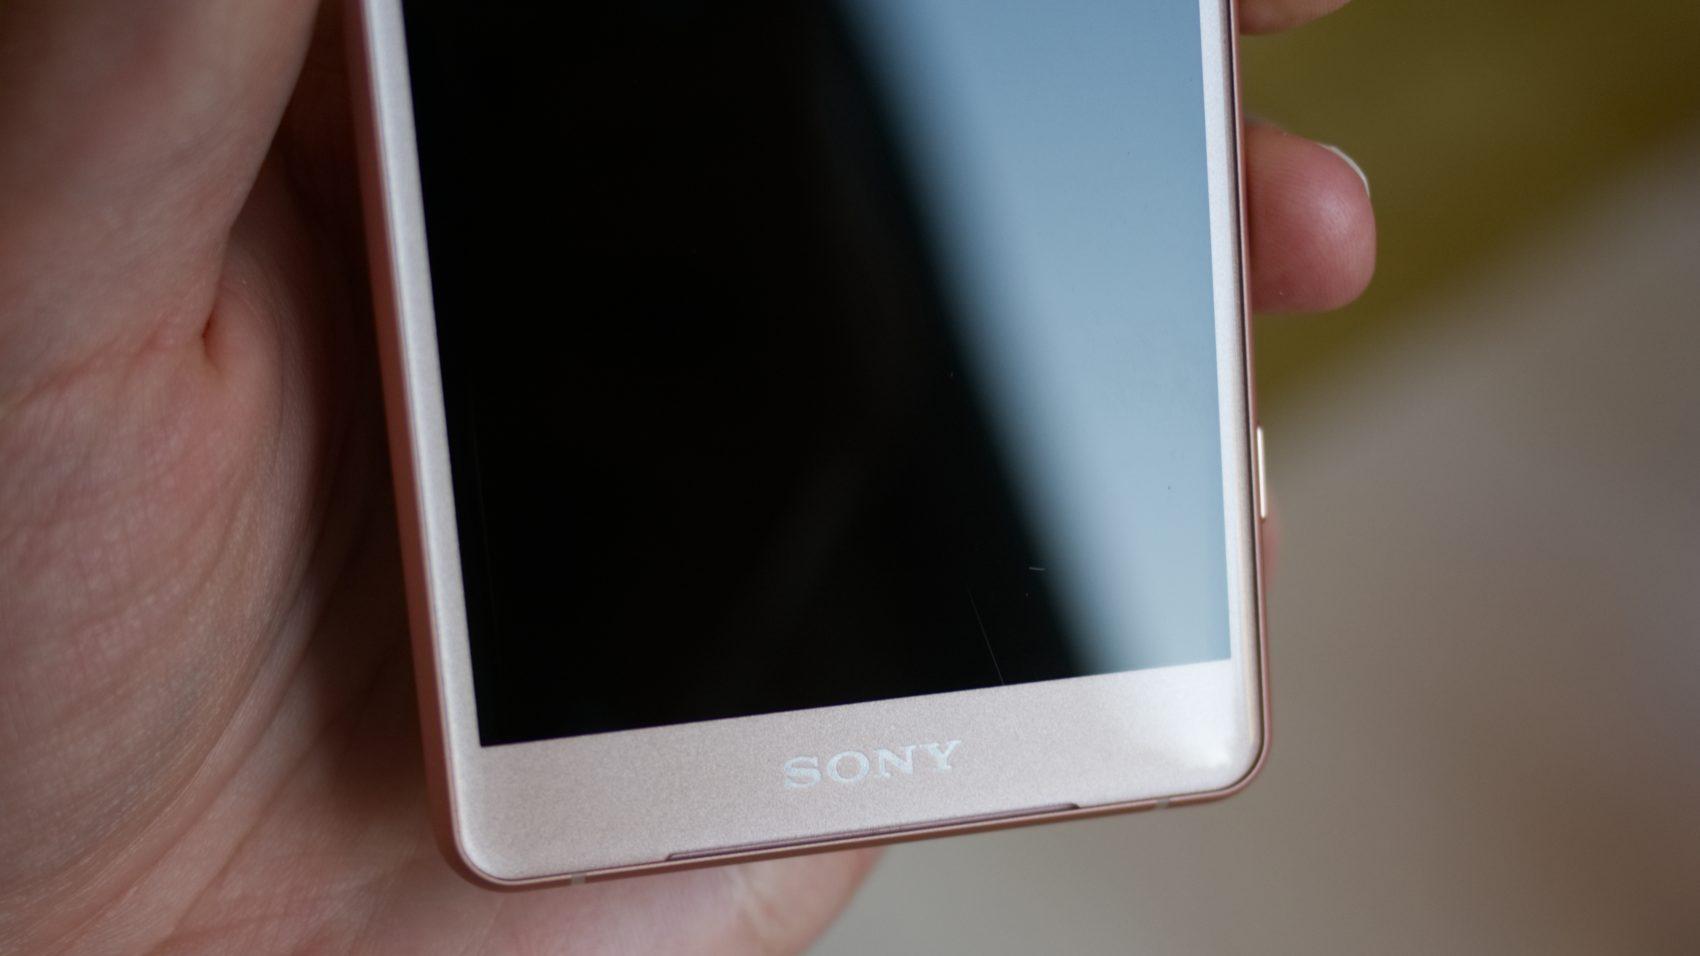 نقد و بررسی اکسپریا ایکس زد 2 کامپکت سونی - Sony Xperia XZ2 Compact